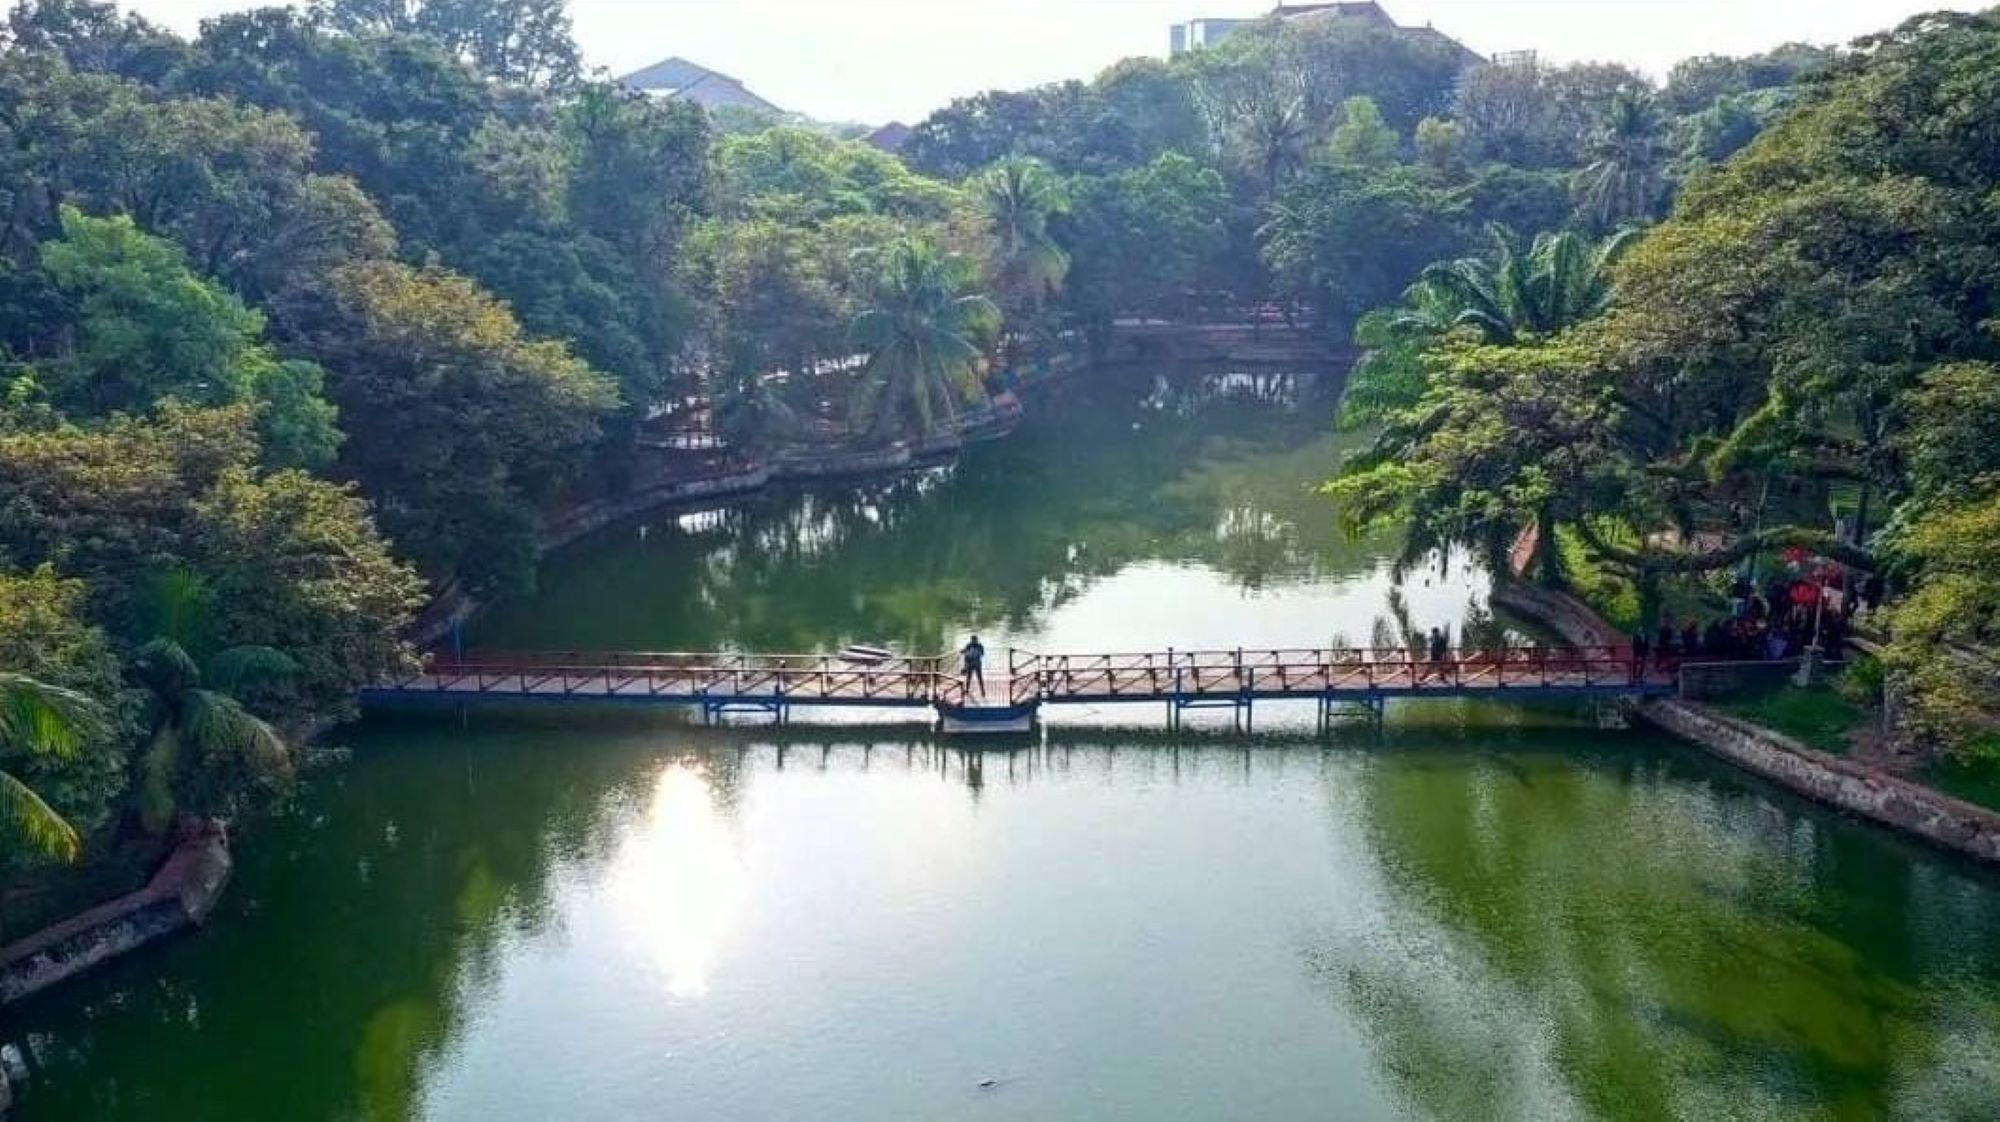 jembatan di tengah danau -palembang destinasi